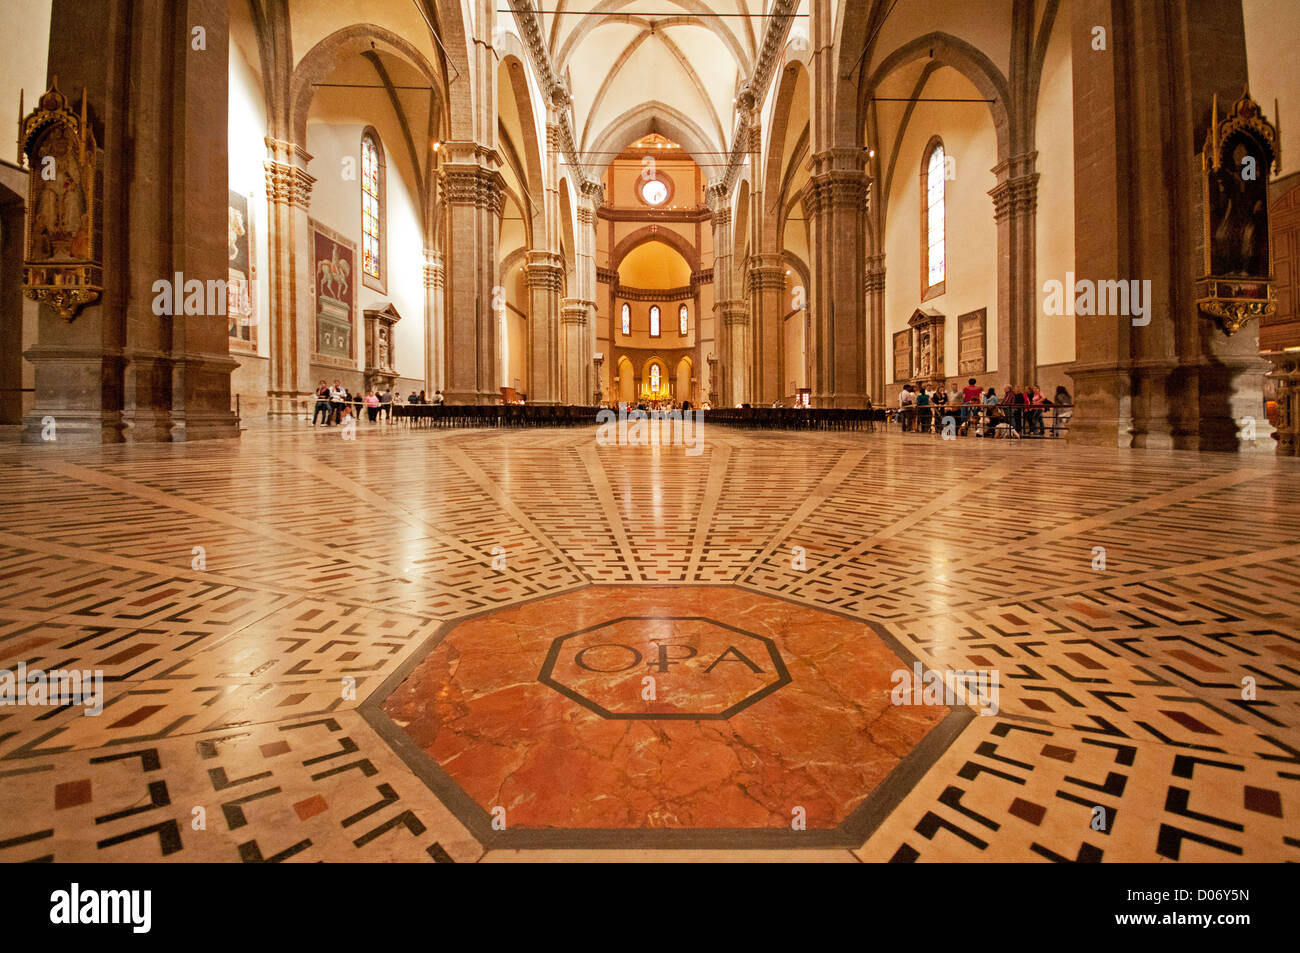 Innere des Florenz Kathedrale Duomo Santa Maria del Fiore zeigt schöne Marmorboden mit OPA Zeichen Stockfoto